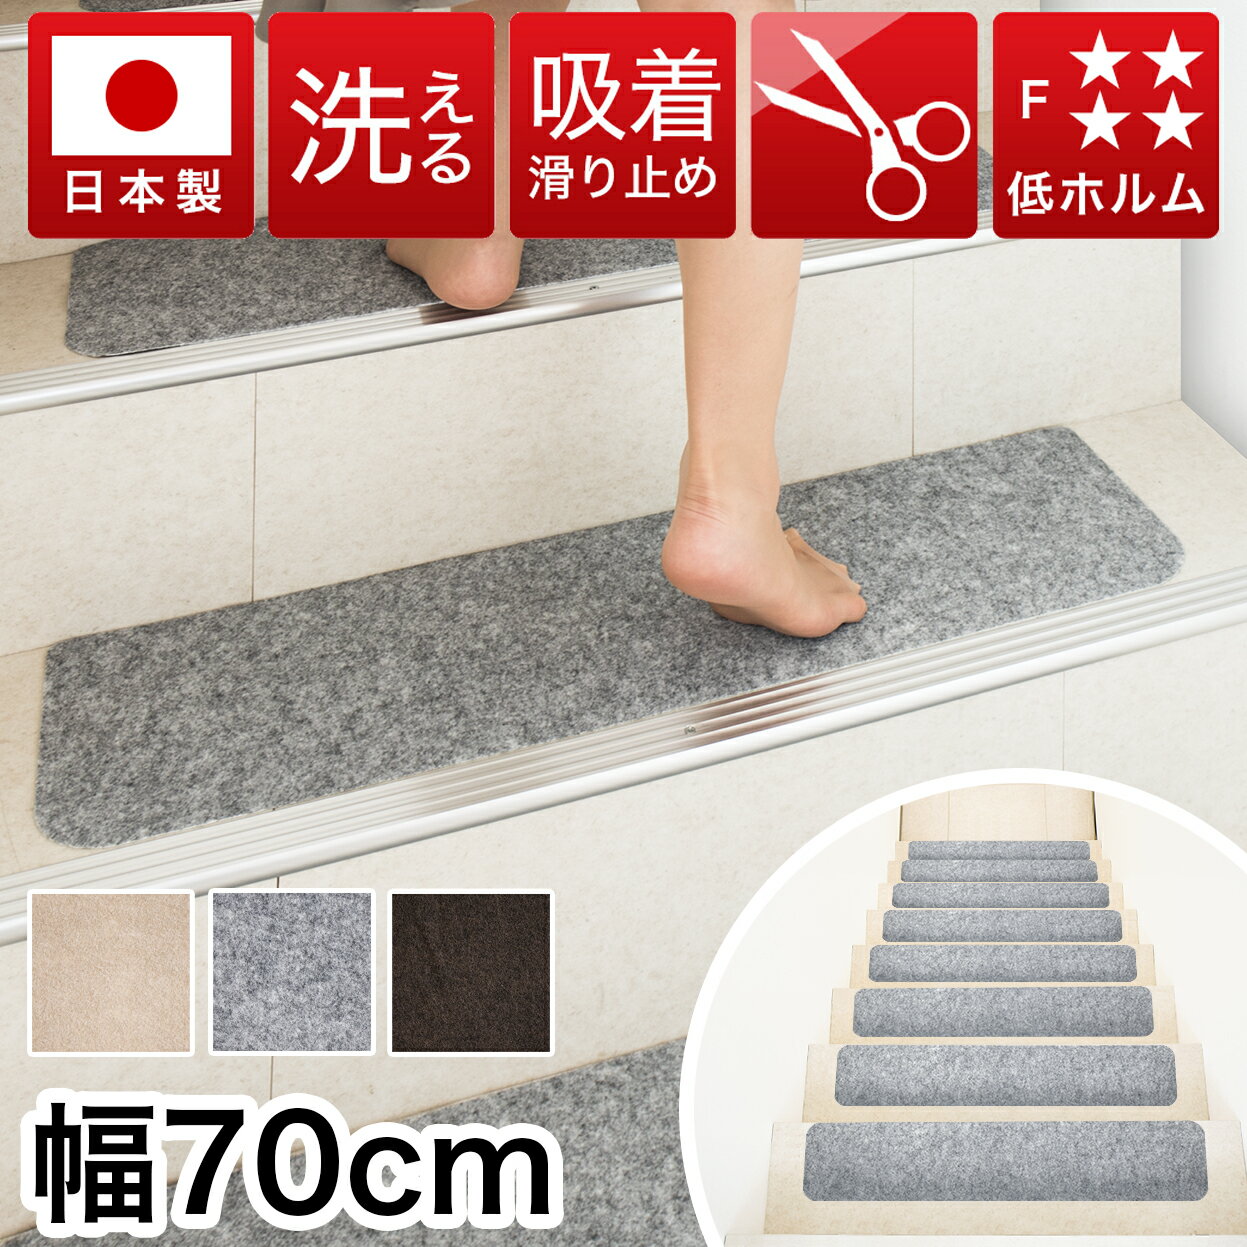 【日本製】吸着階段マット ワイド 幅70cm 15枚 階段 滑り止め マット カーペット 階段用 洗 ...